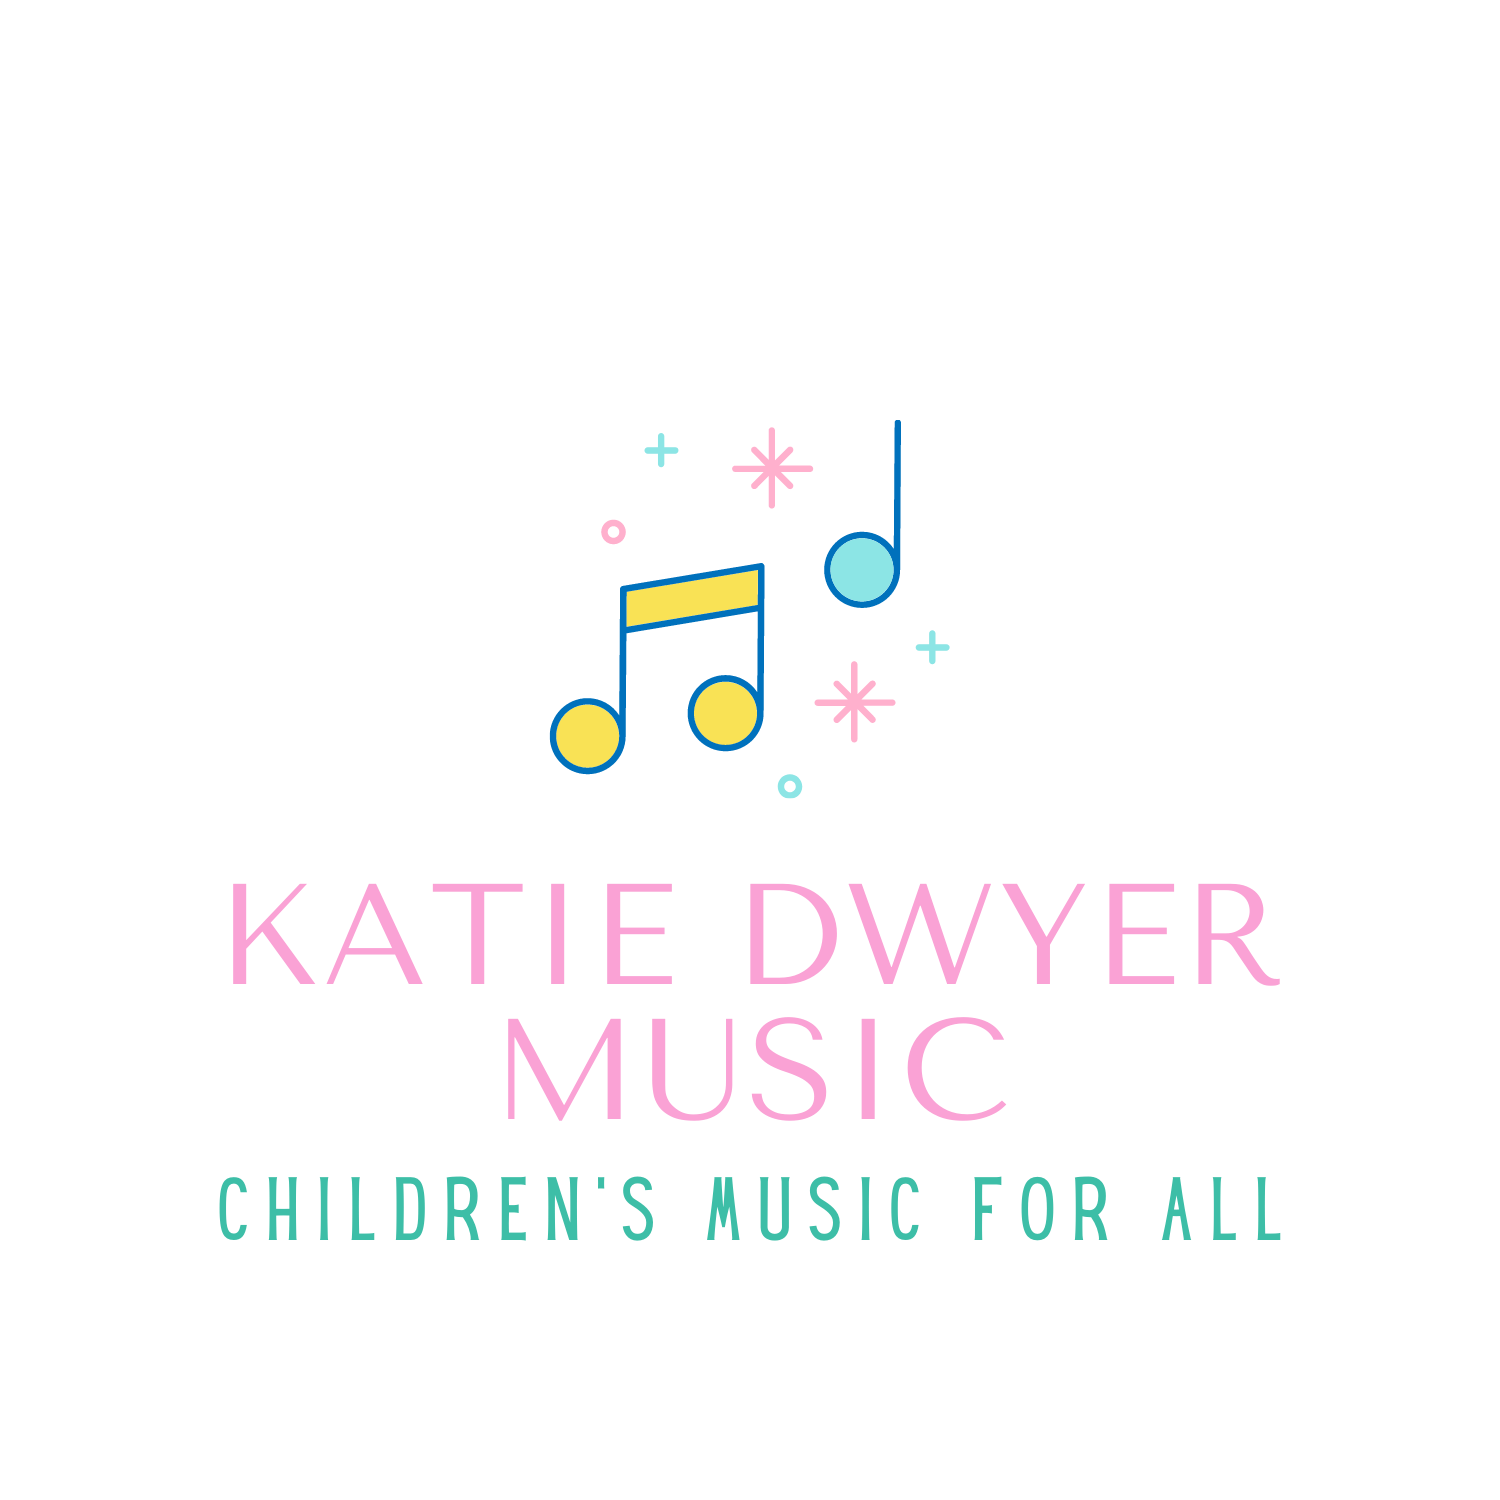 Katie Dwyer Music - Katie&#39;s Corner - Children&#39;s Music for All